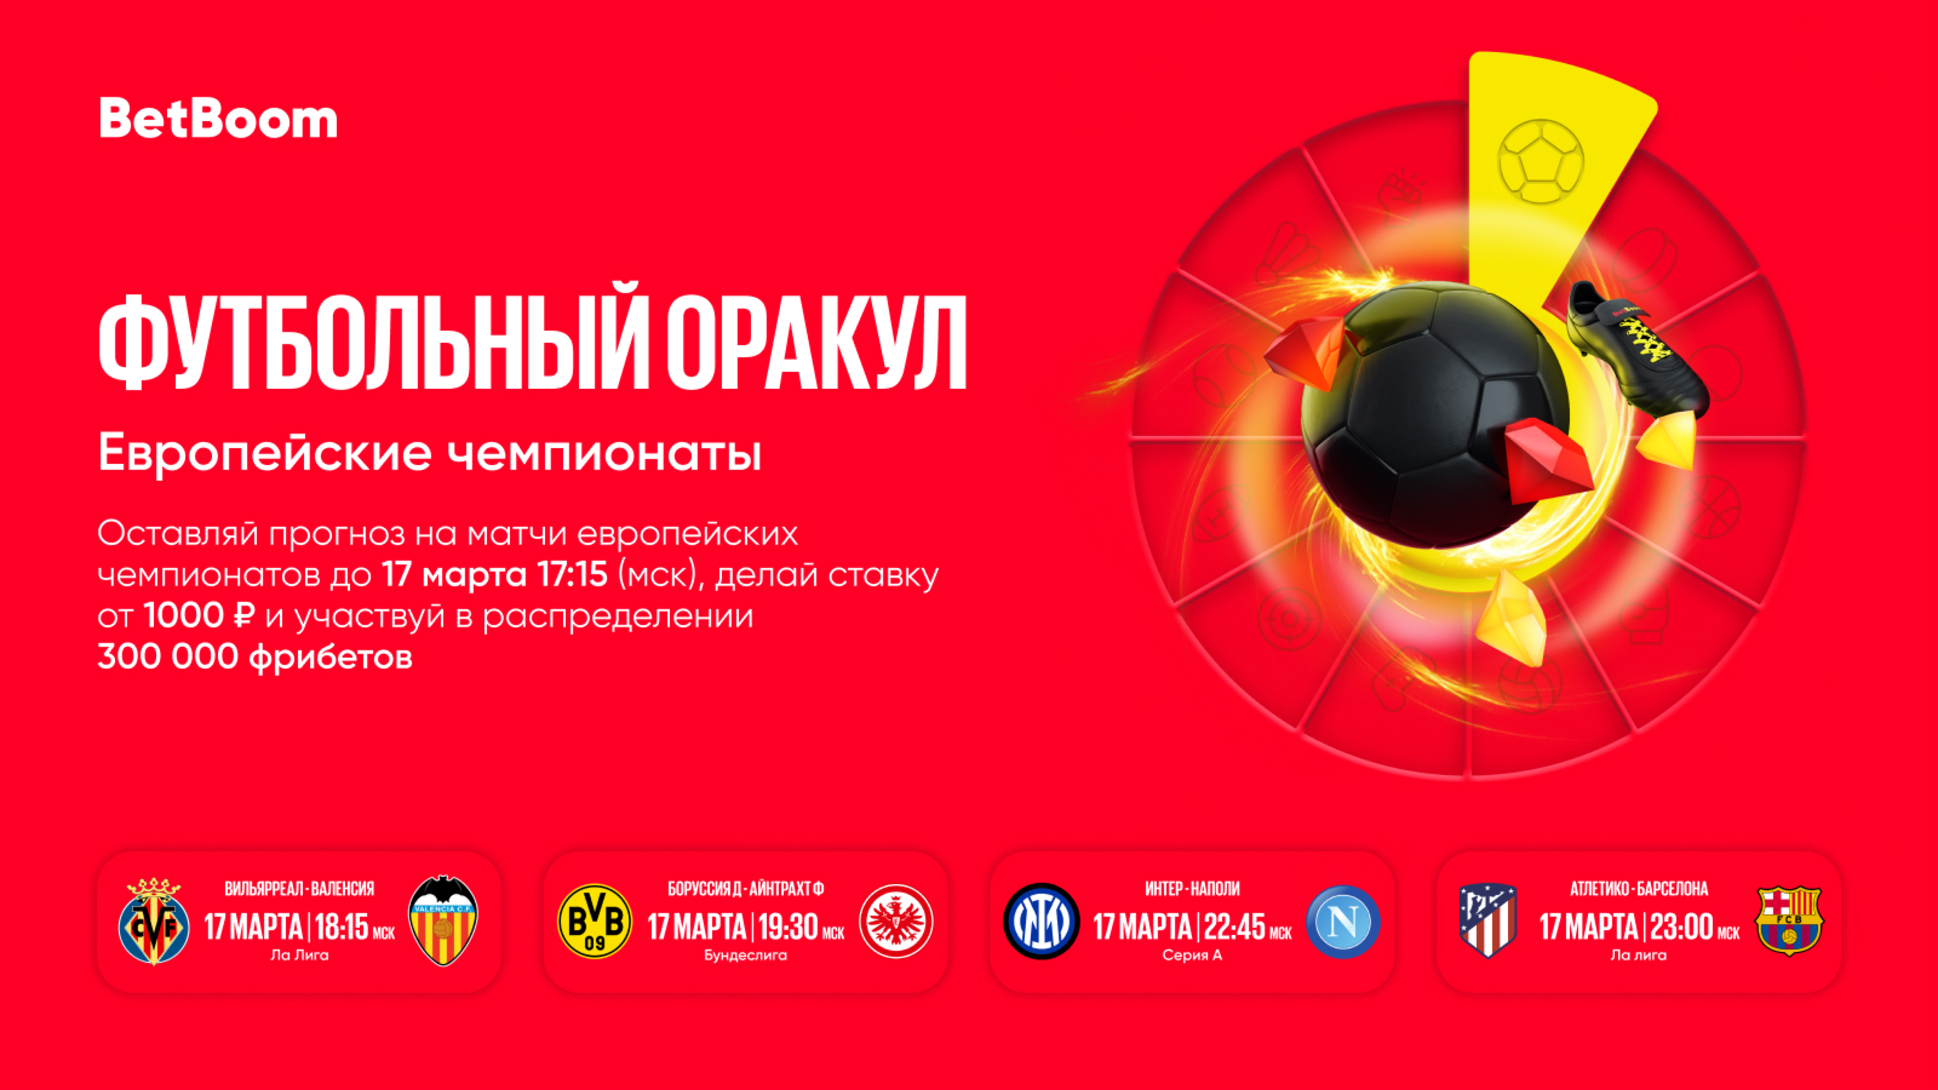 BetBoom разыграет 300000 рублей за верные прогнозы на футбол